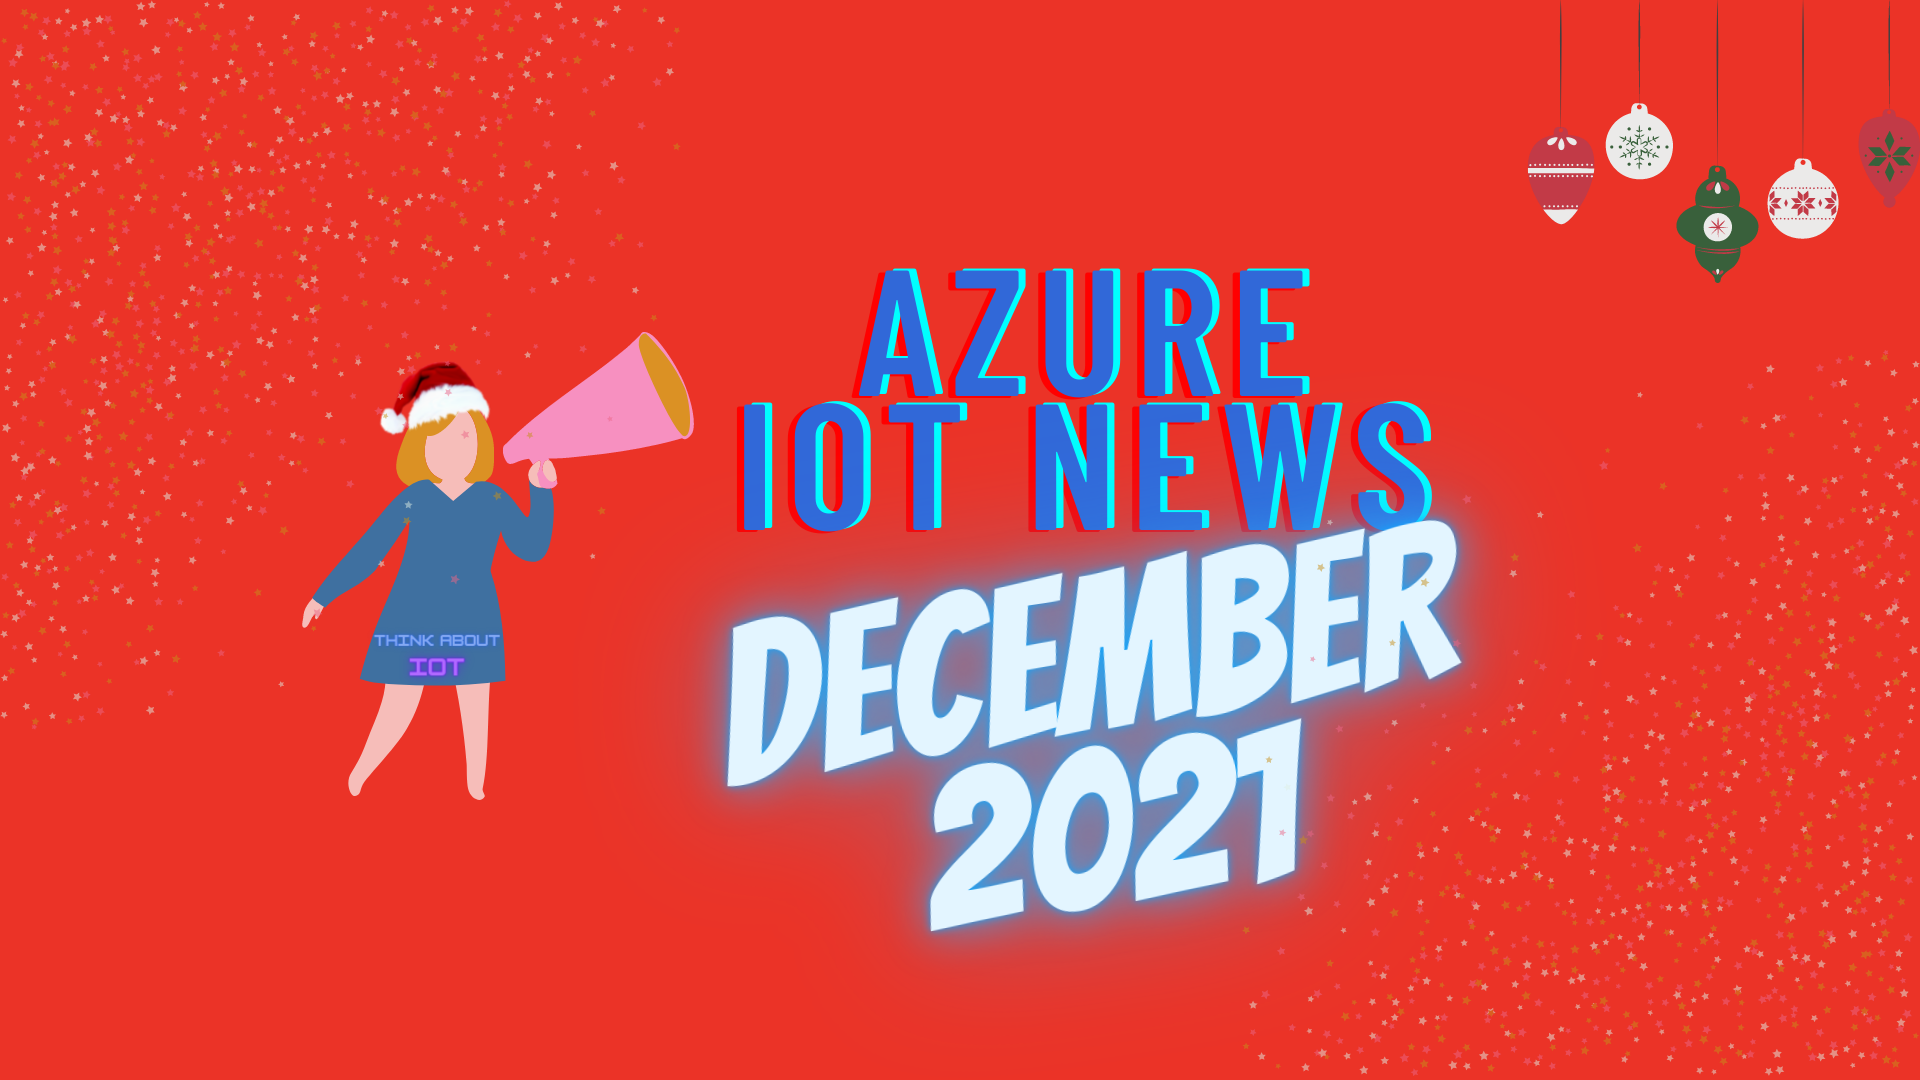 Azure IoT News December 2021.png